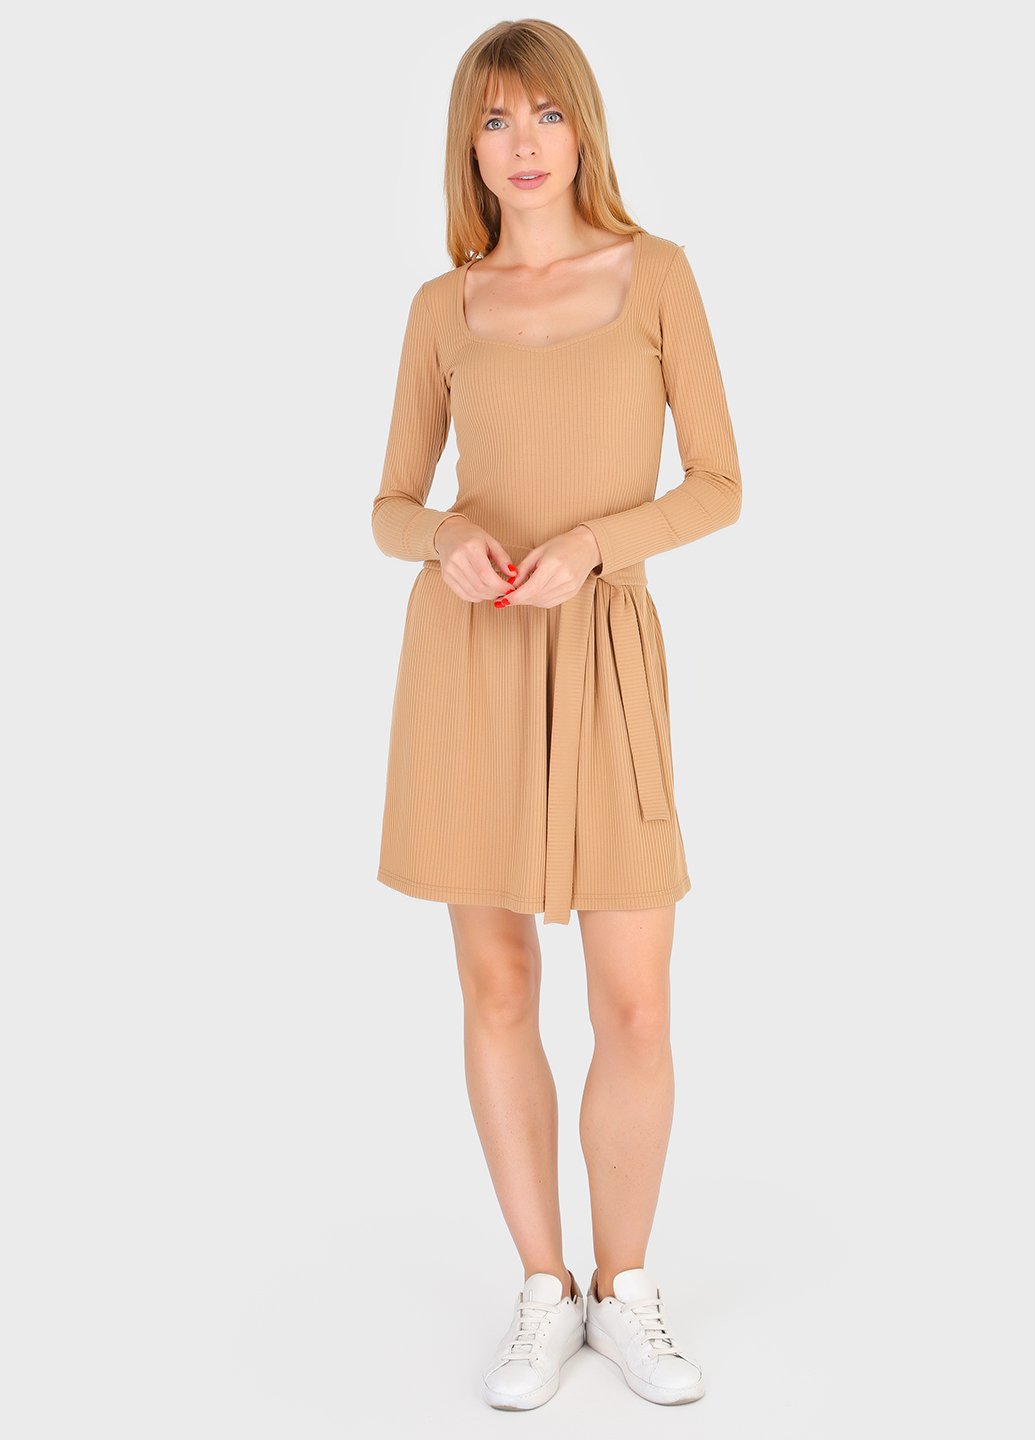 Купить Платье в рубчик Merlini Панамера 700000019 - Песочный, 42-44 в интернет-магазине